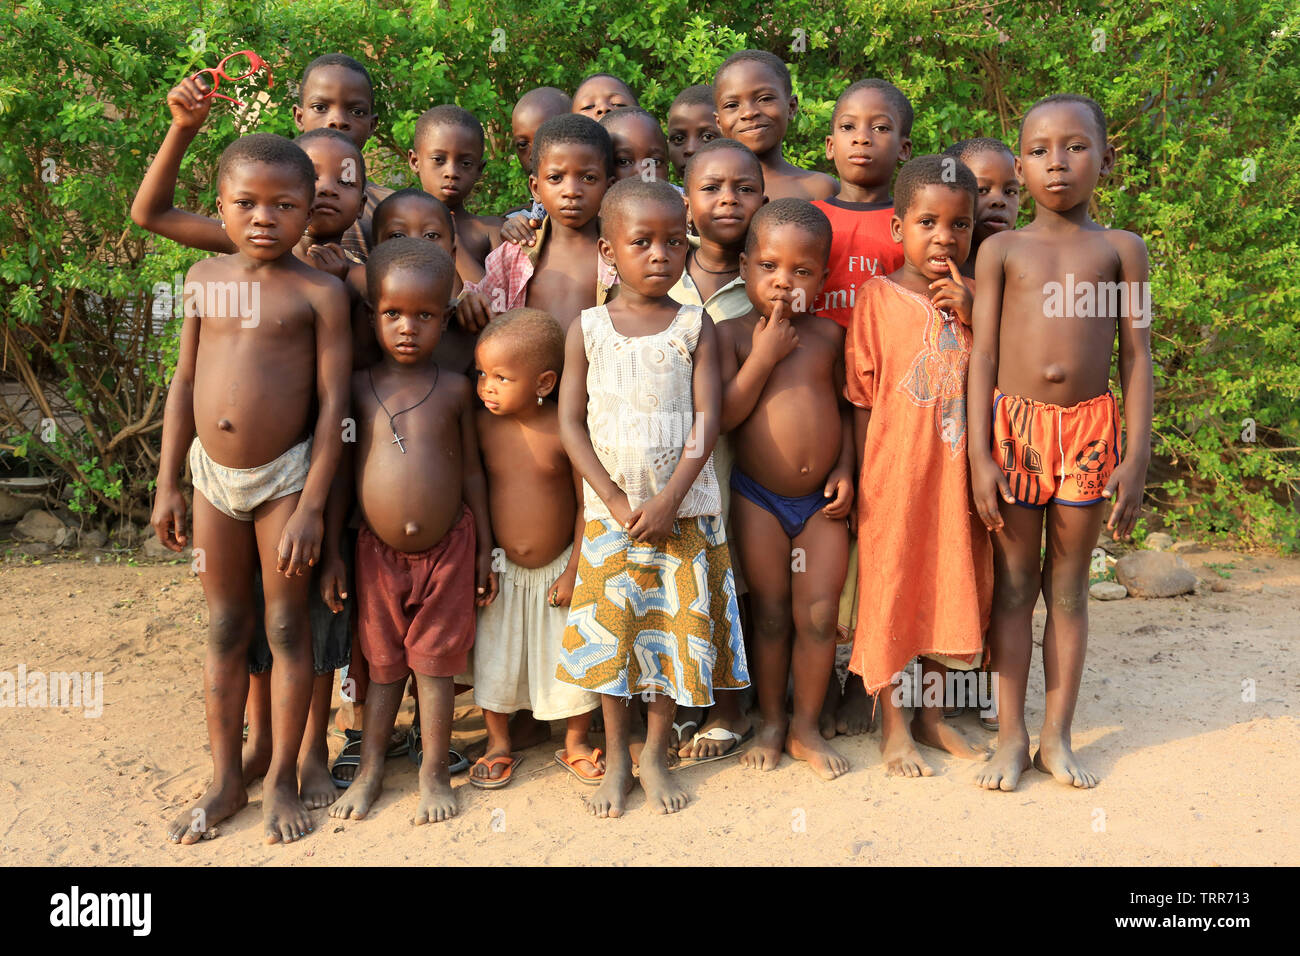 Groupe d'enfants Togolais. Datcha. Togo. Afrique de l'Ouest. Stock Photo